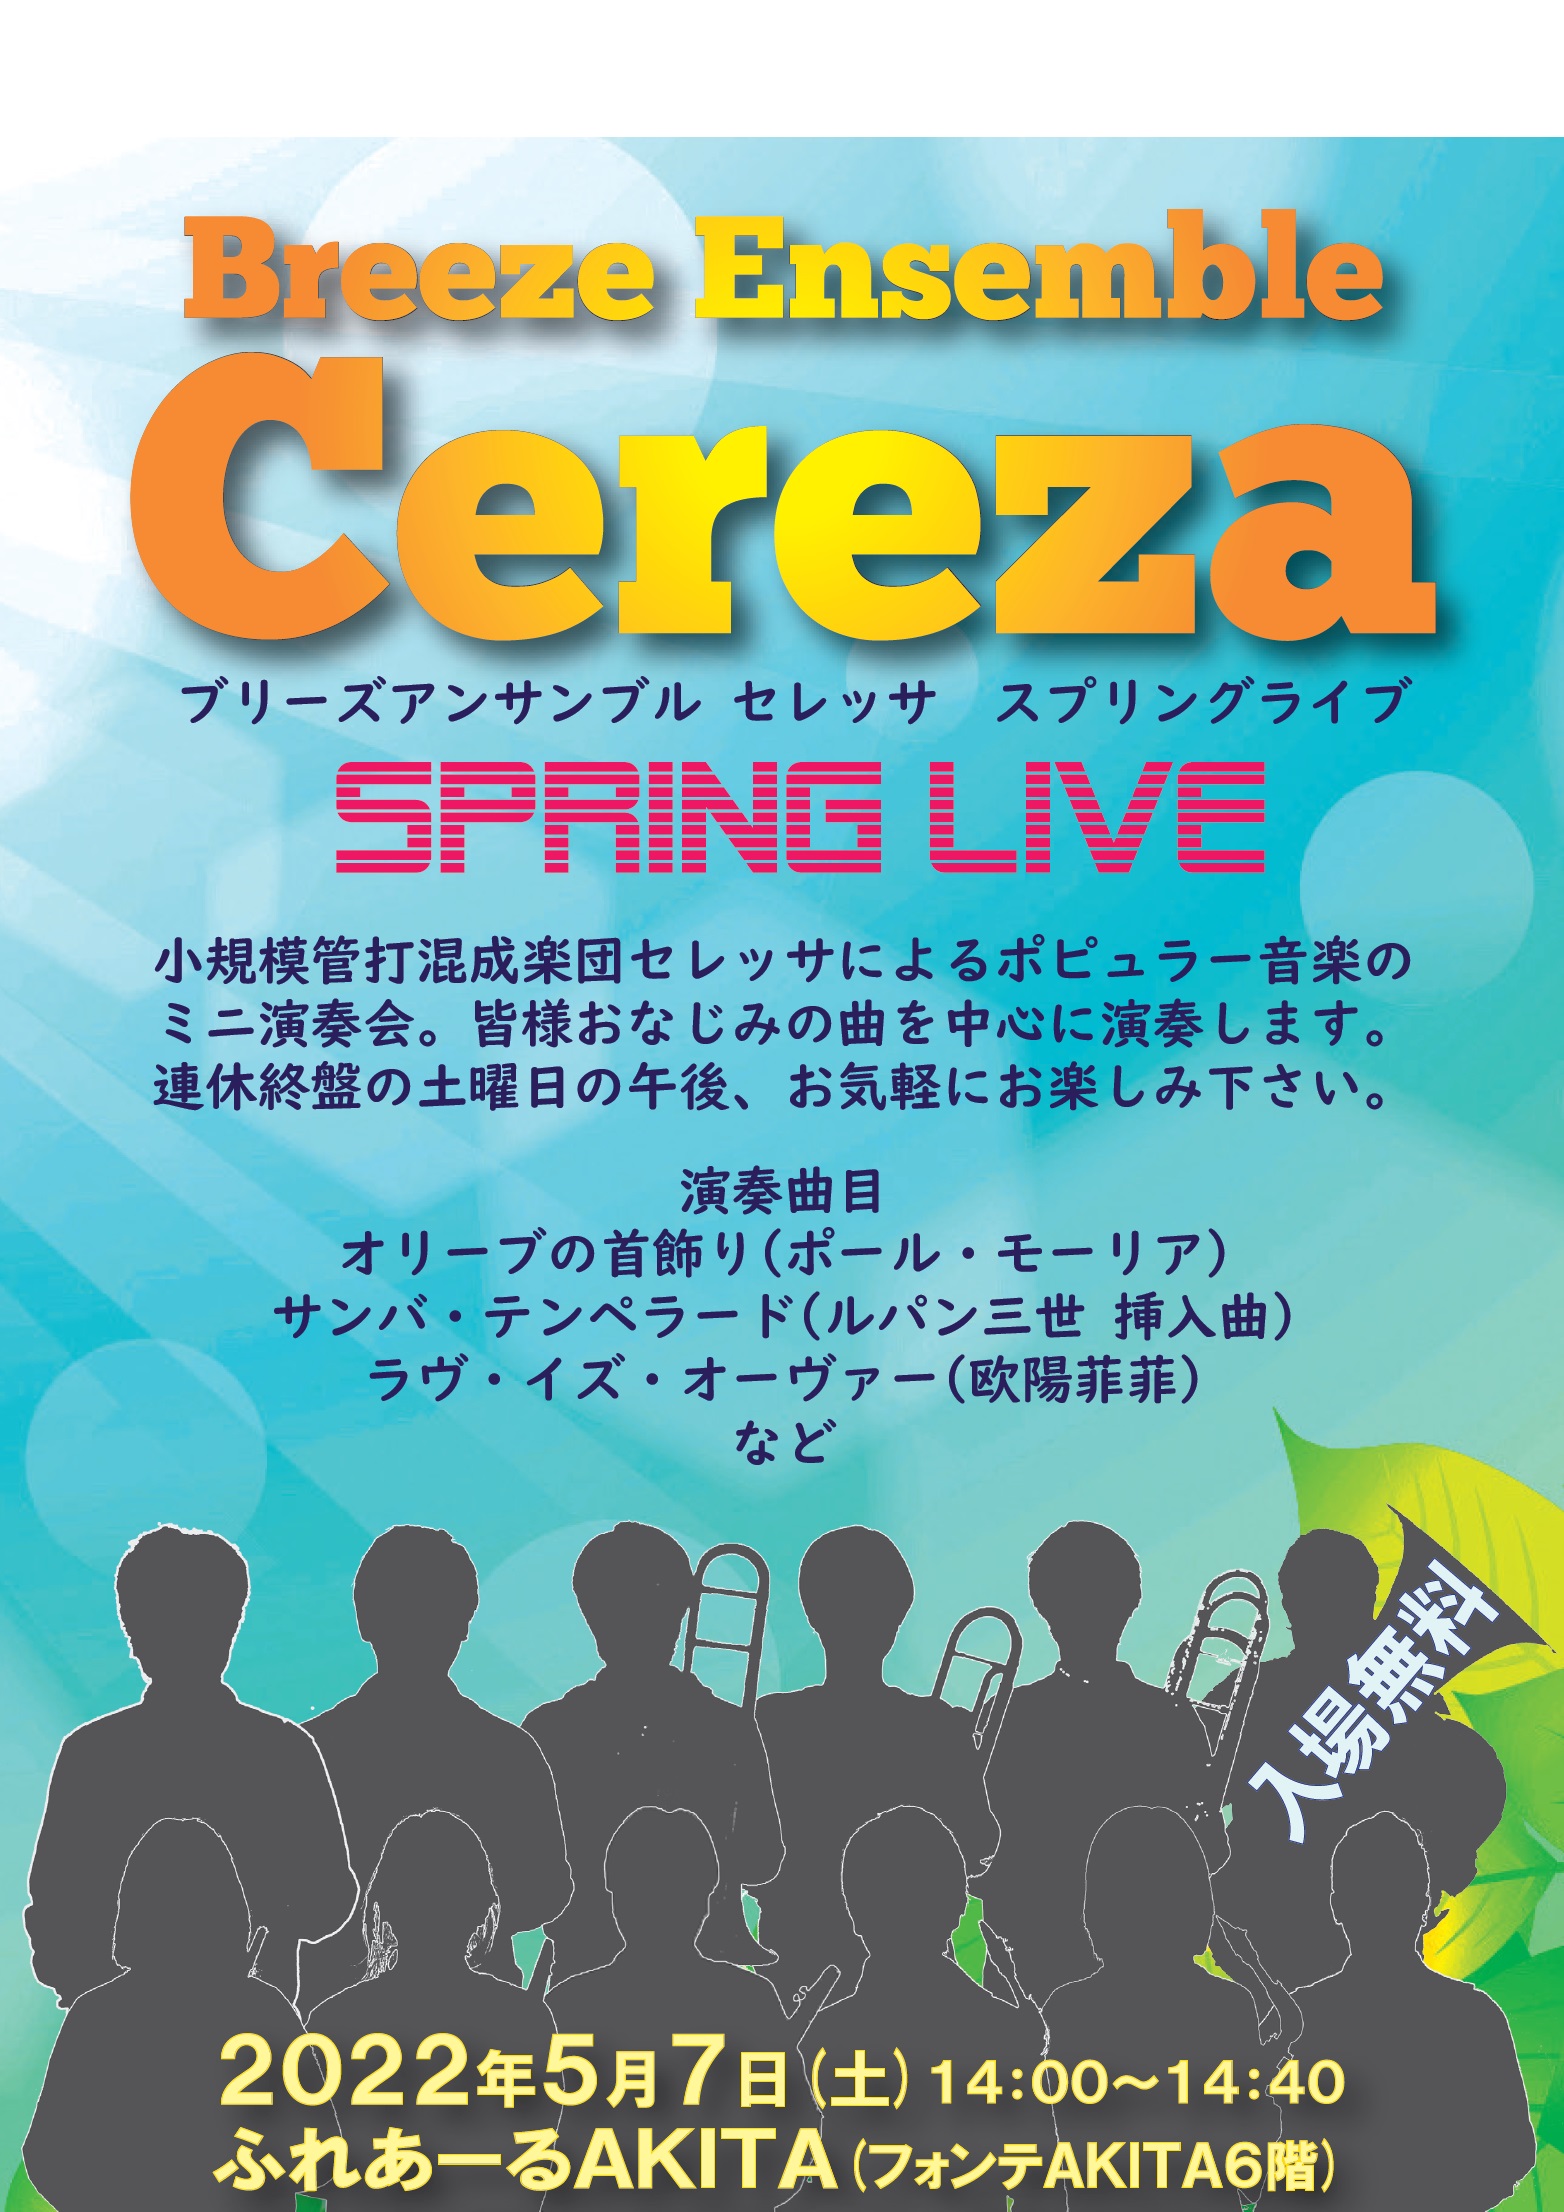 5/7  Breeze Ensemble Cereza Spring LIVE(ブリーズ アンサンブル セレッサ スプリング ライブ)